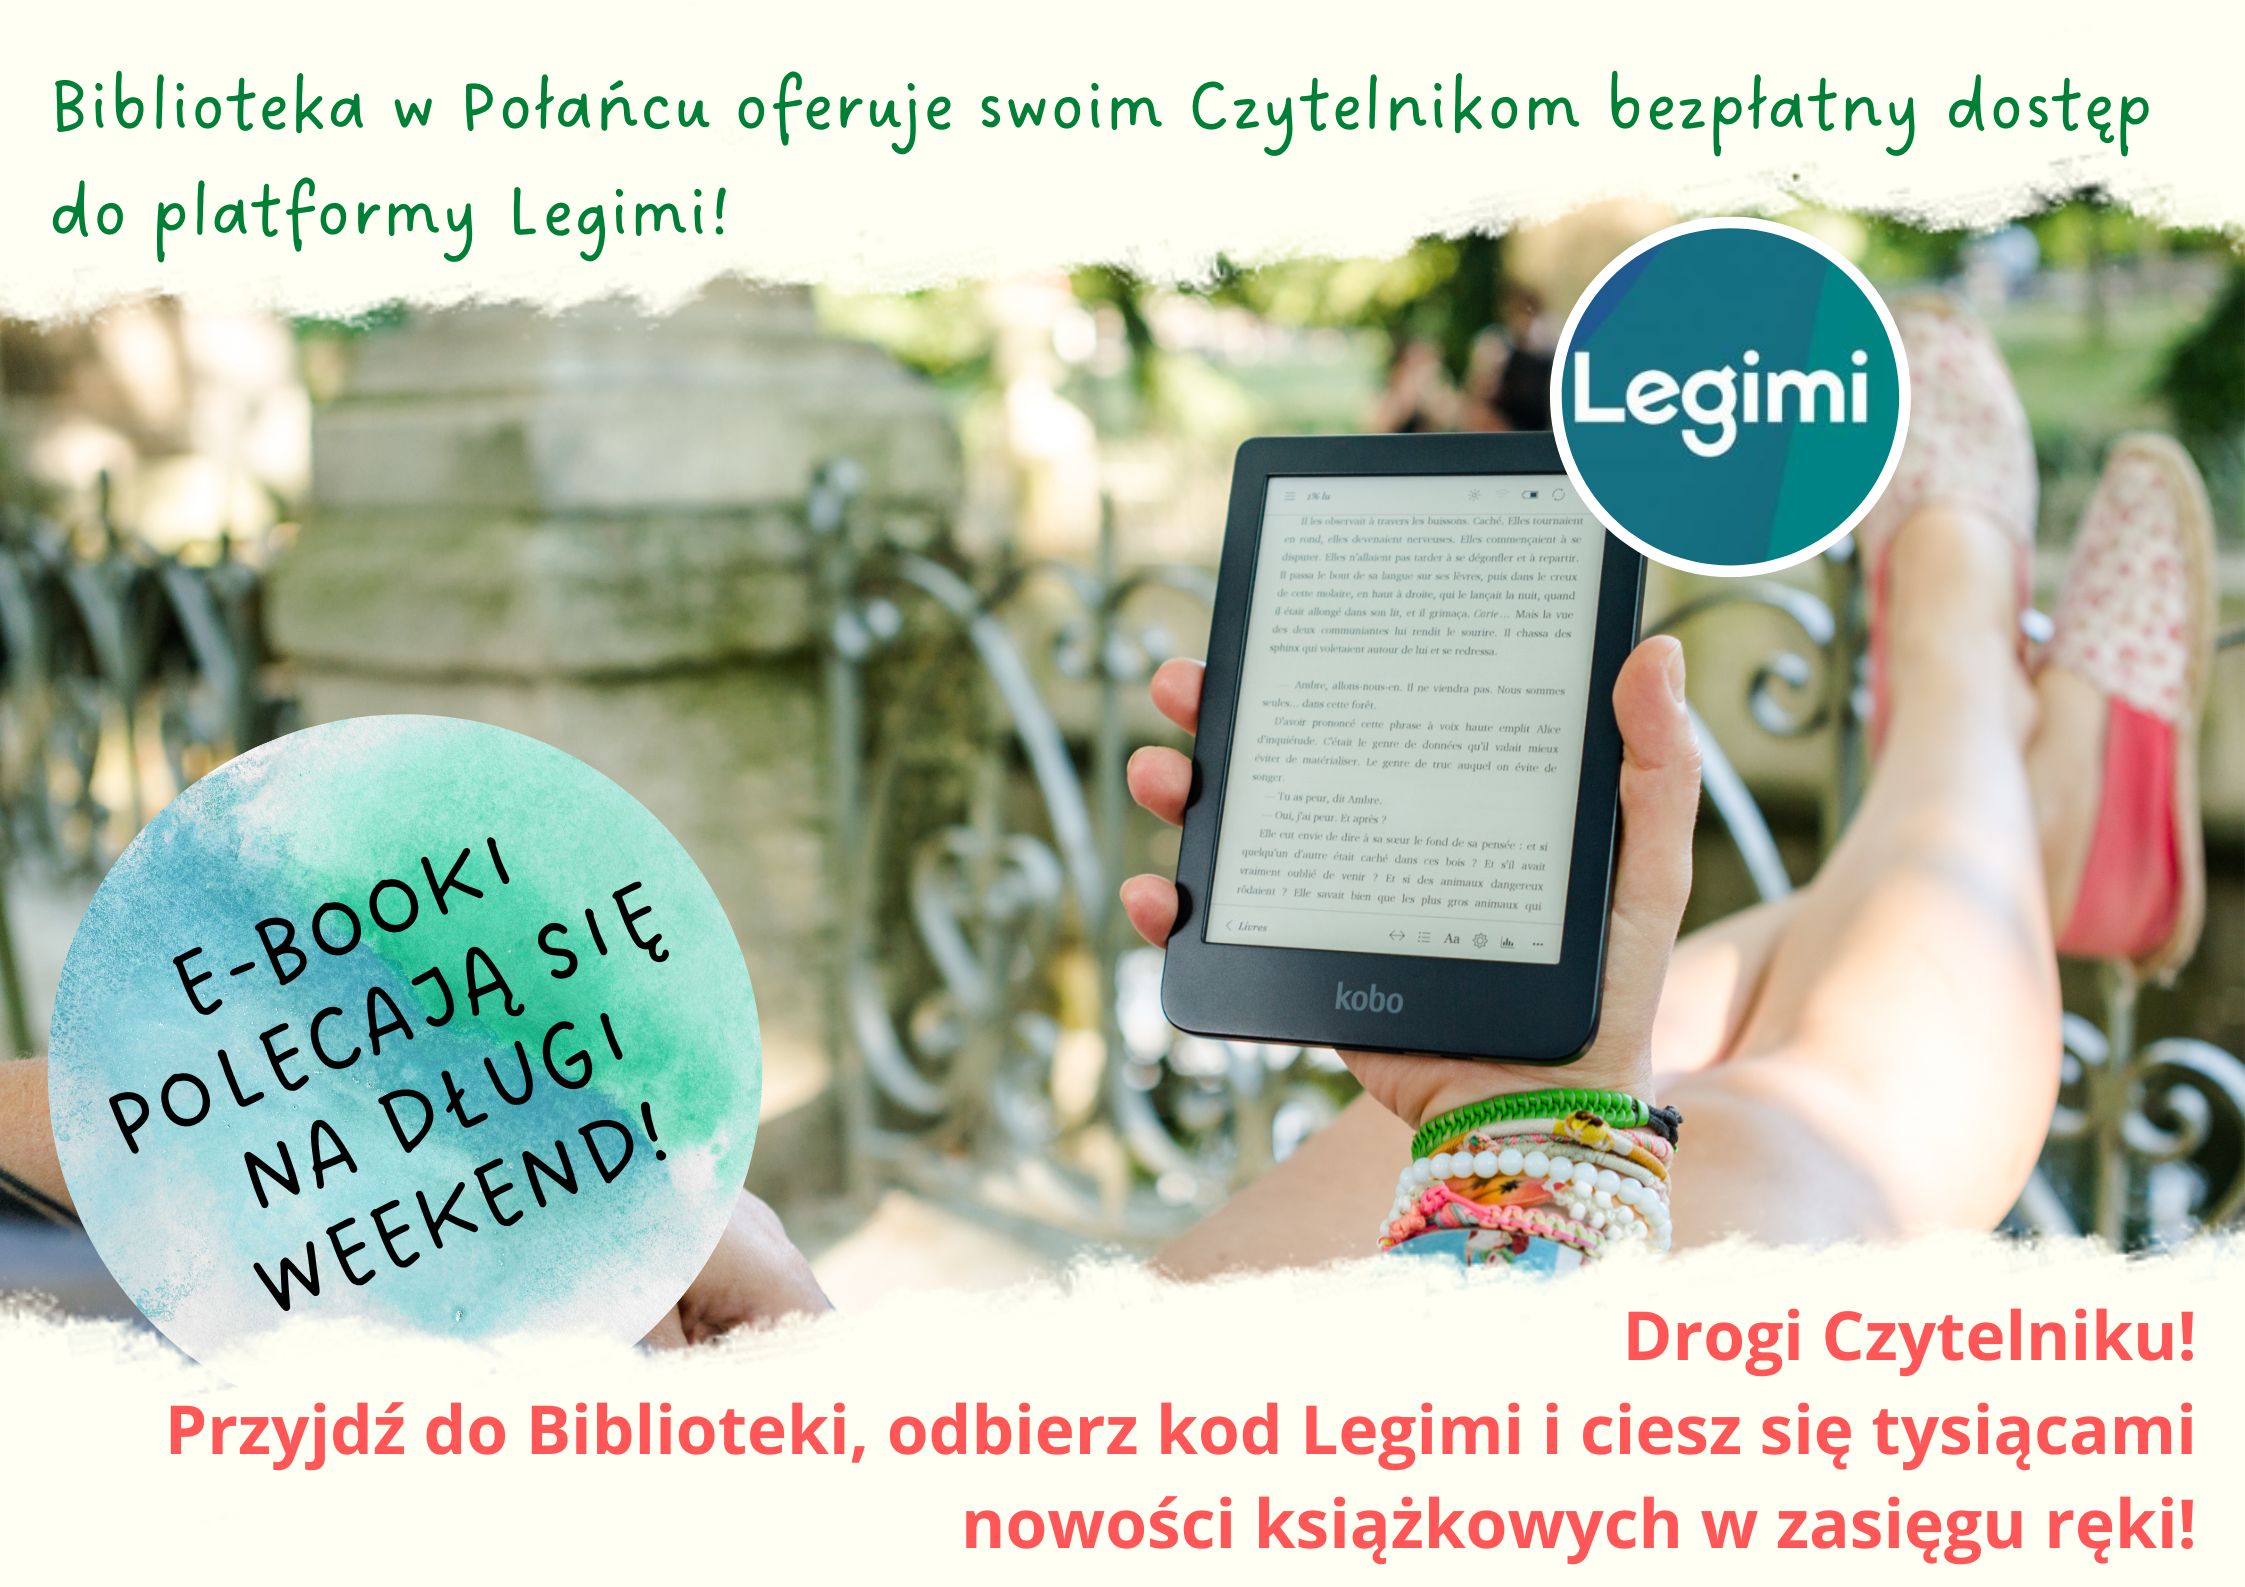 Plakat kolorowy, ręka wyciągnięta trzymająca czytnik książek, informacja o dostępności Legimi dla czytelników Biblioteki w Połańcu